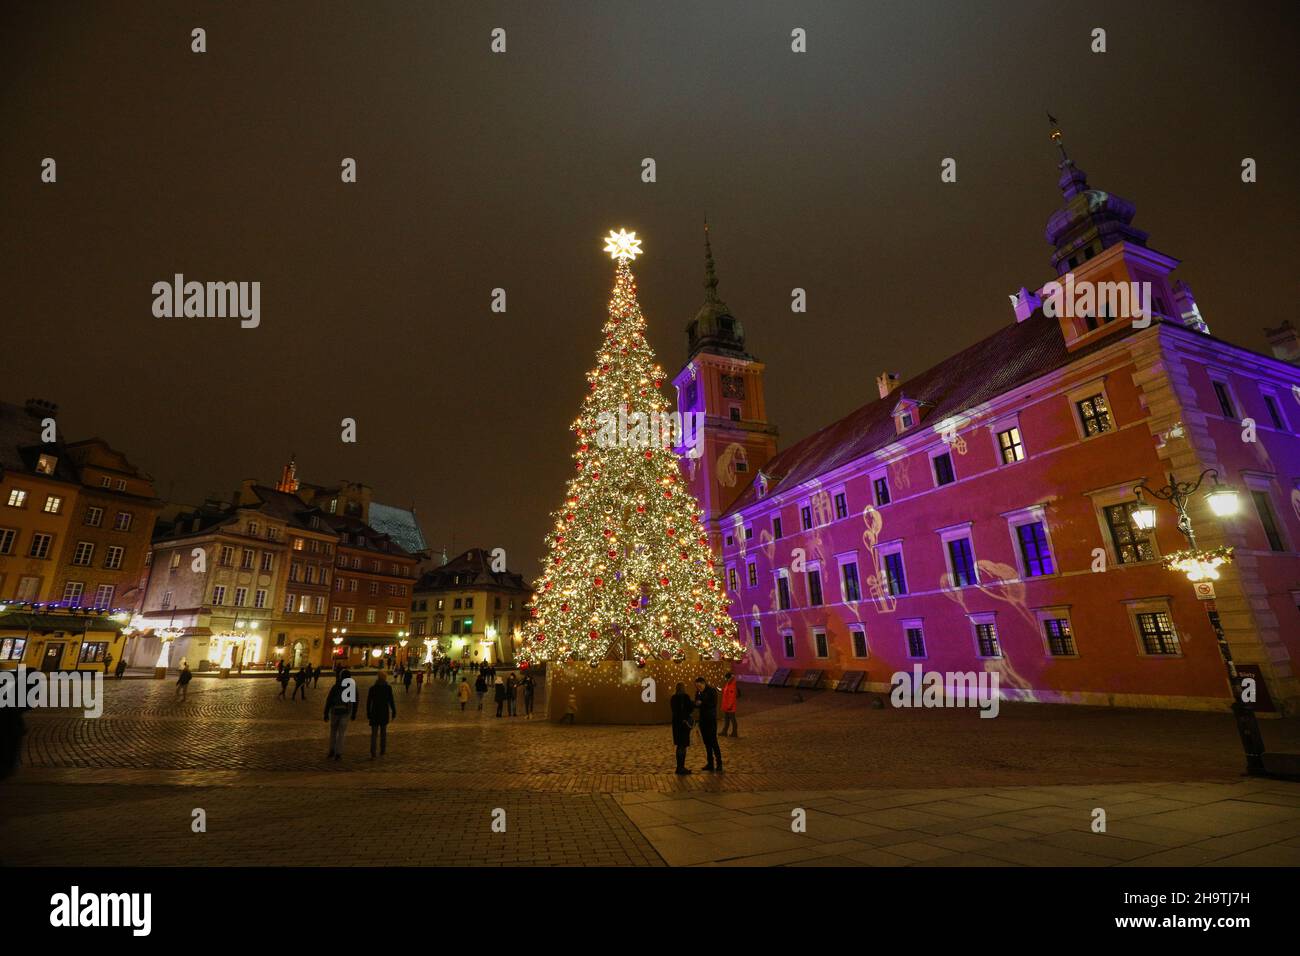 Am 7. Dezember 2021 wird auf dem Königlichen Schlossplatz in Warschau, Polen, ein großer, geschmückter Weihnachtsbaum gesehen. Stockfoto